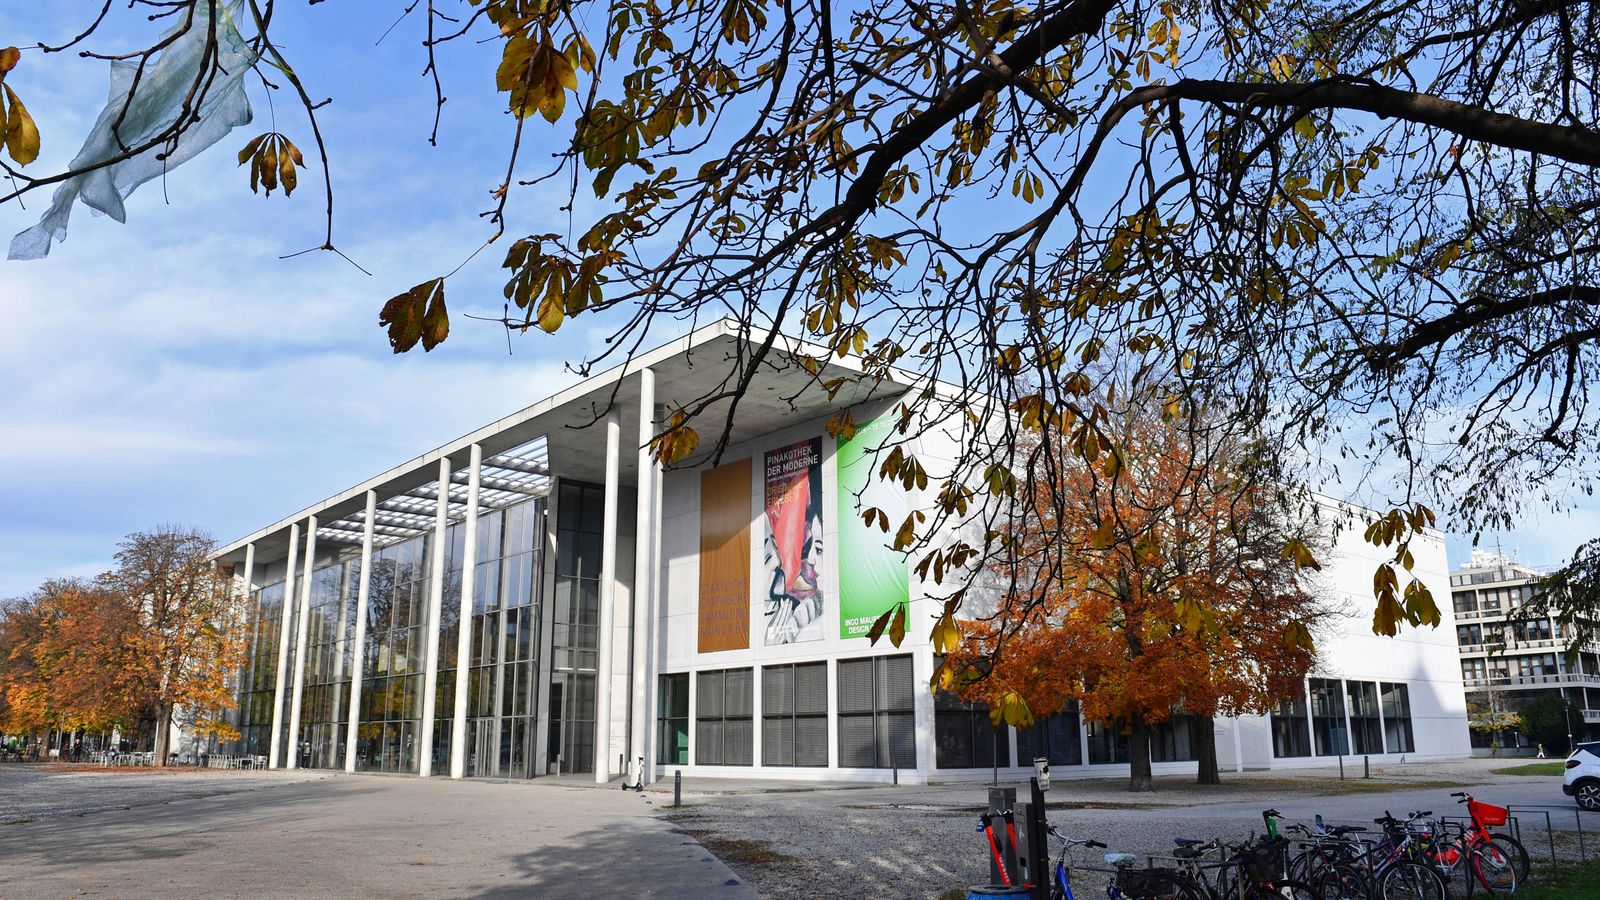 Deutschland: Museum für Moderne Kunst entlässt Mitarbeiter wegen Ausstellung seines eigenen Gemäldes |  Weltnachrichten